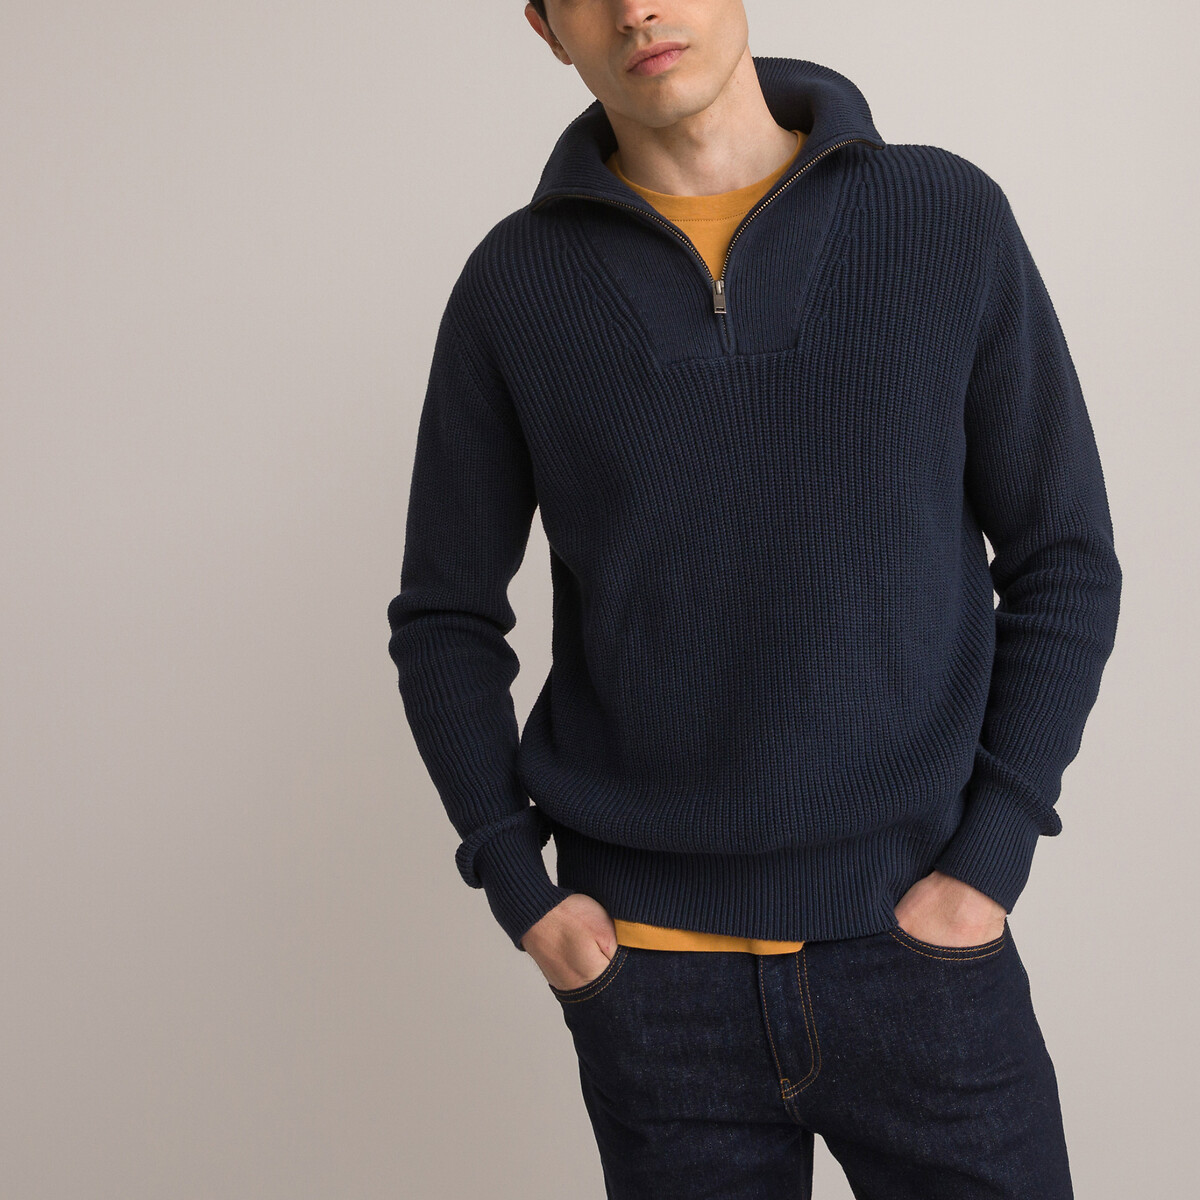 Пуловер С воротником-стойкой из объемного трикотажа L синий